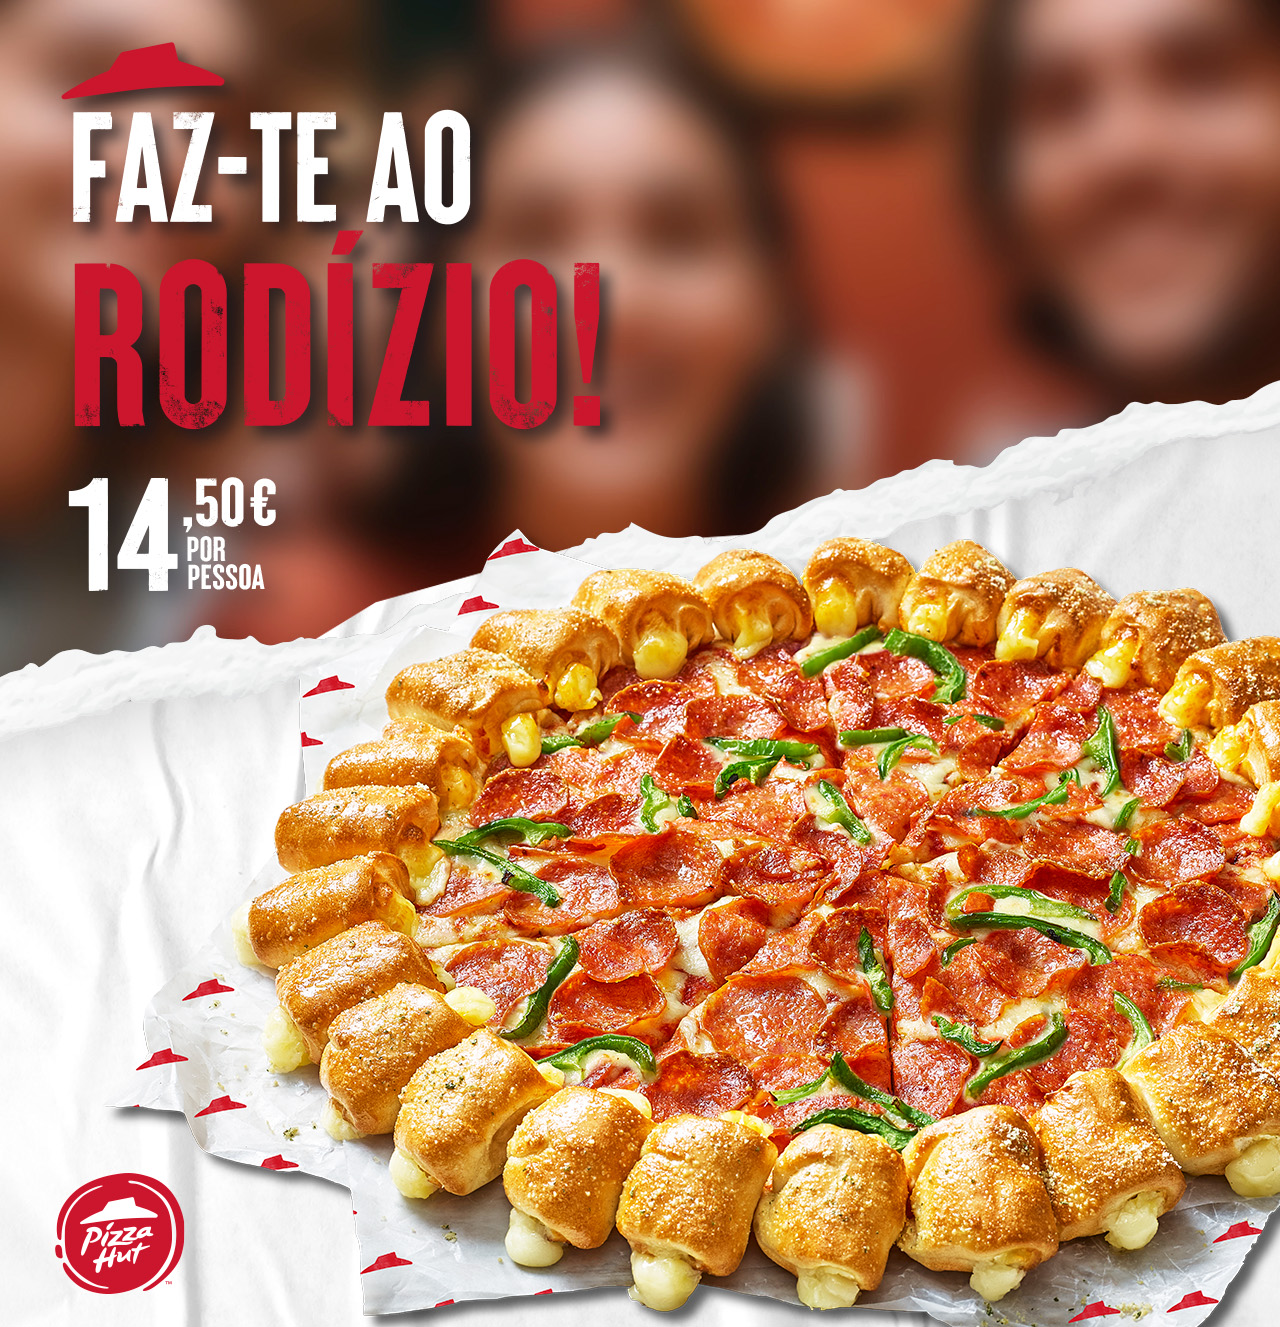 RODIZIO DE PIZZAS. Pizza Hut Portugal